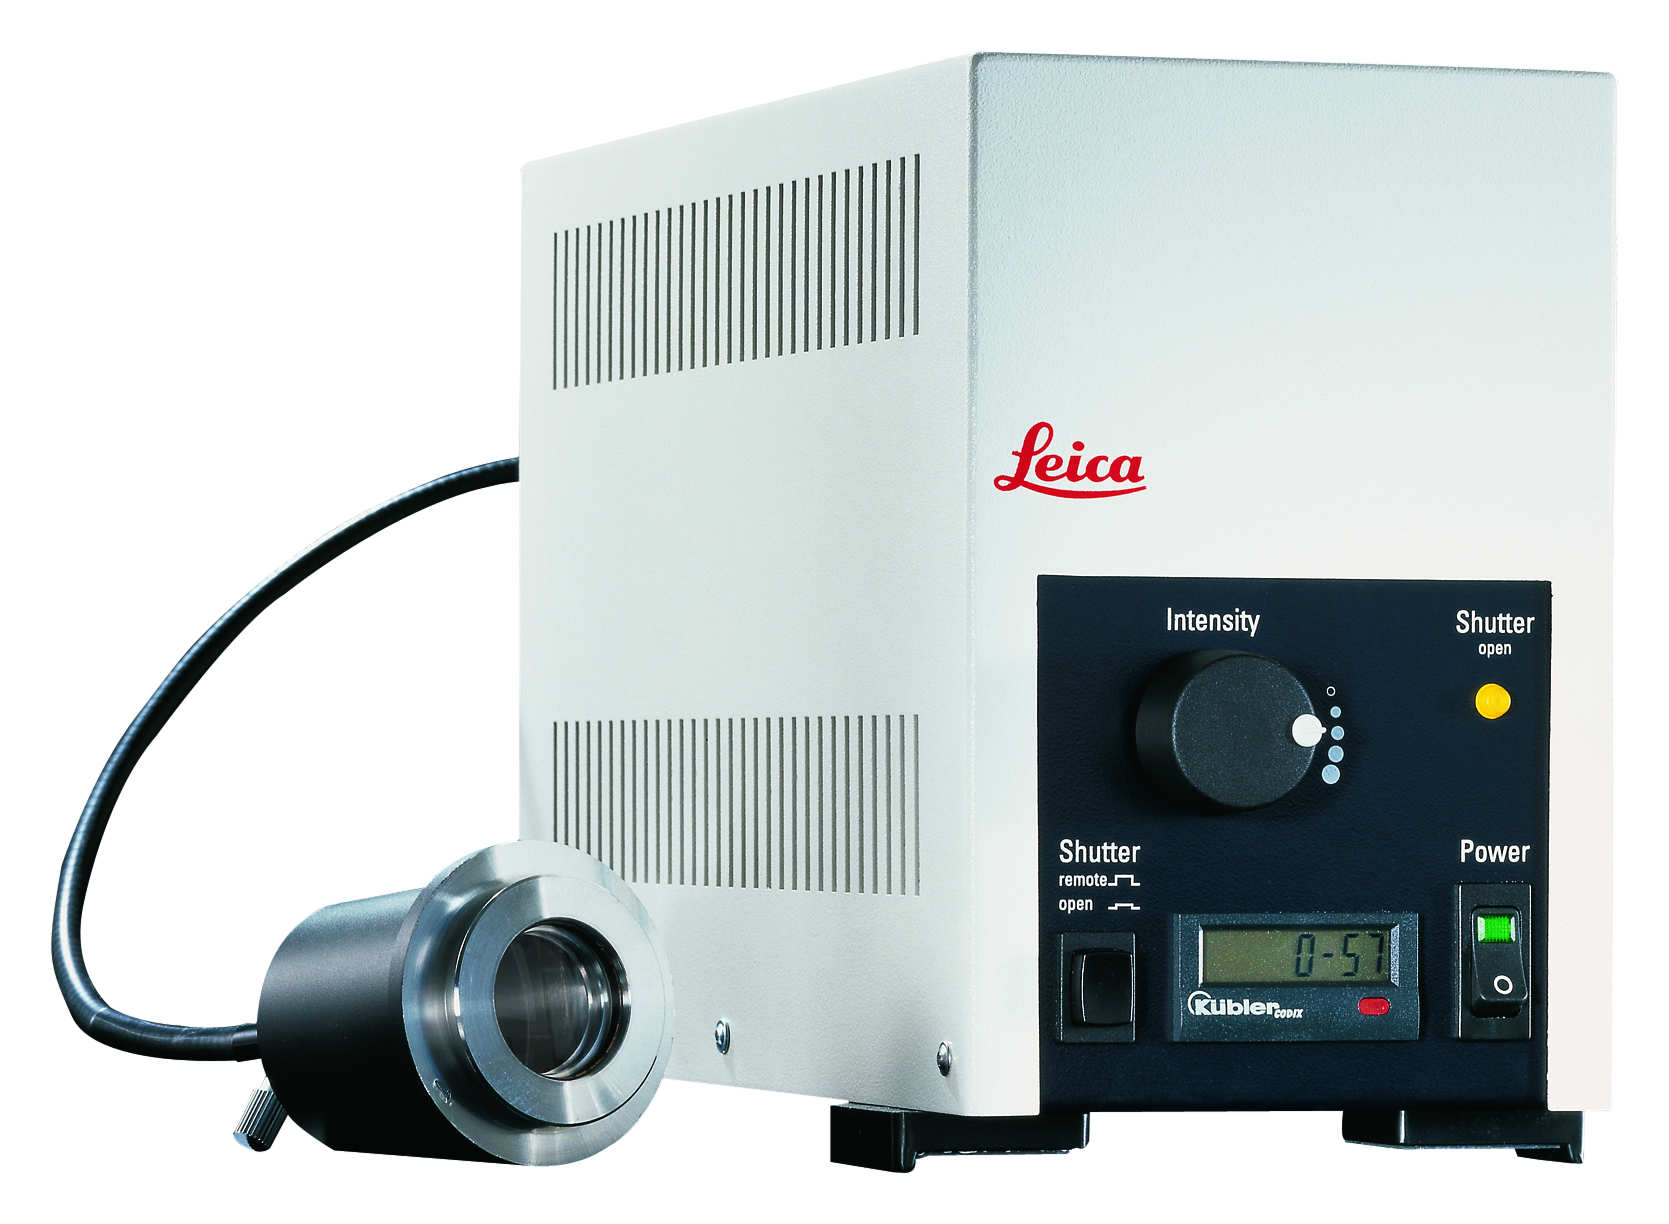 A Leica EL6000 é um aprimoramento ideal e econômico para aquisição de imagens de fluorescência.